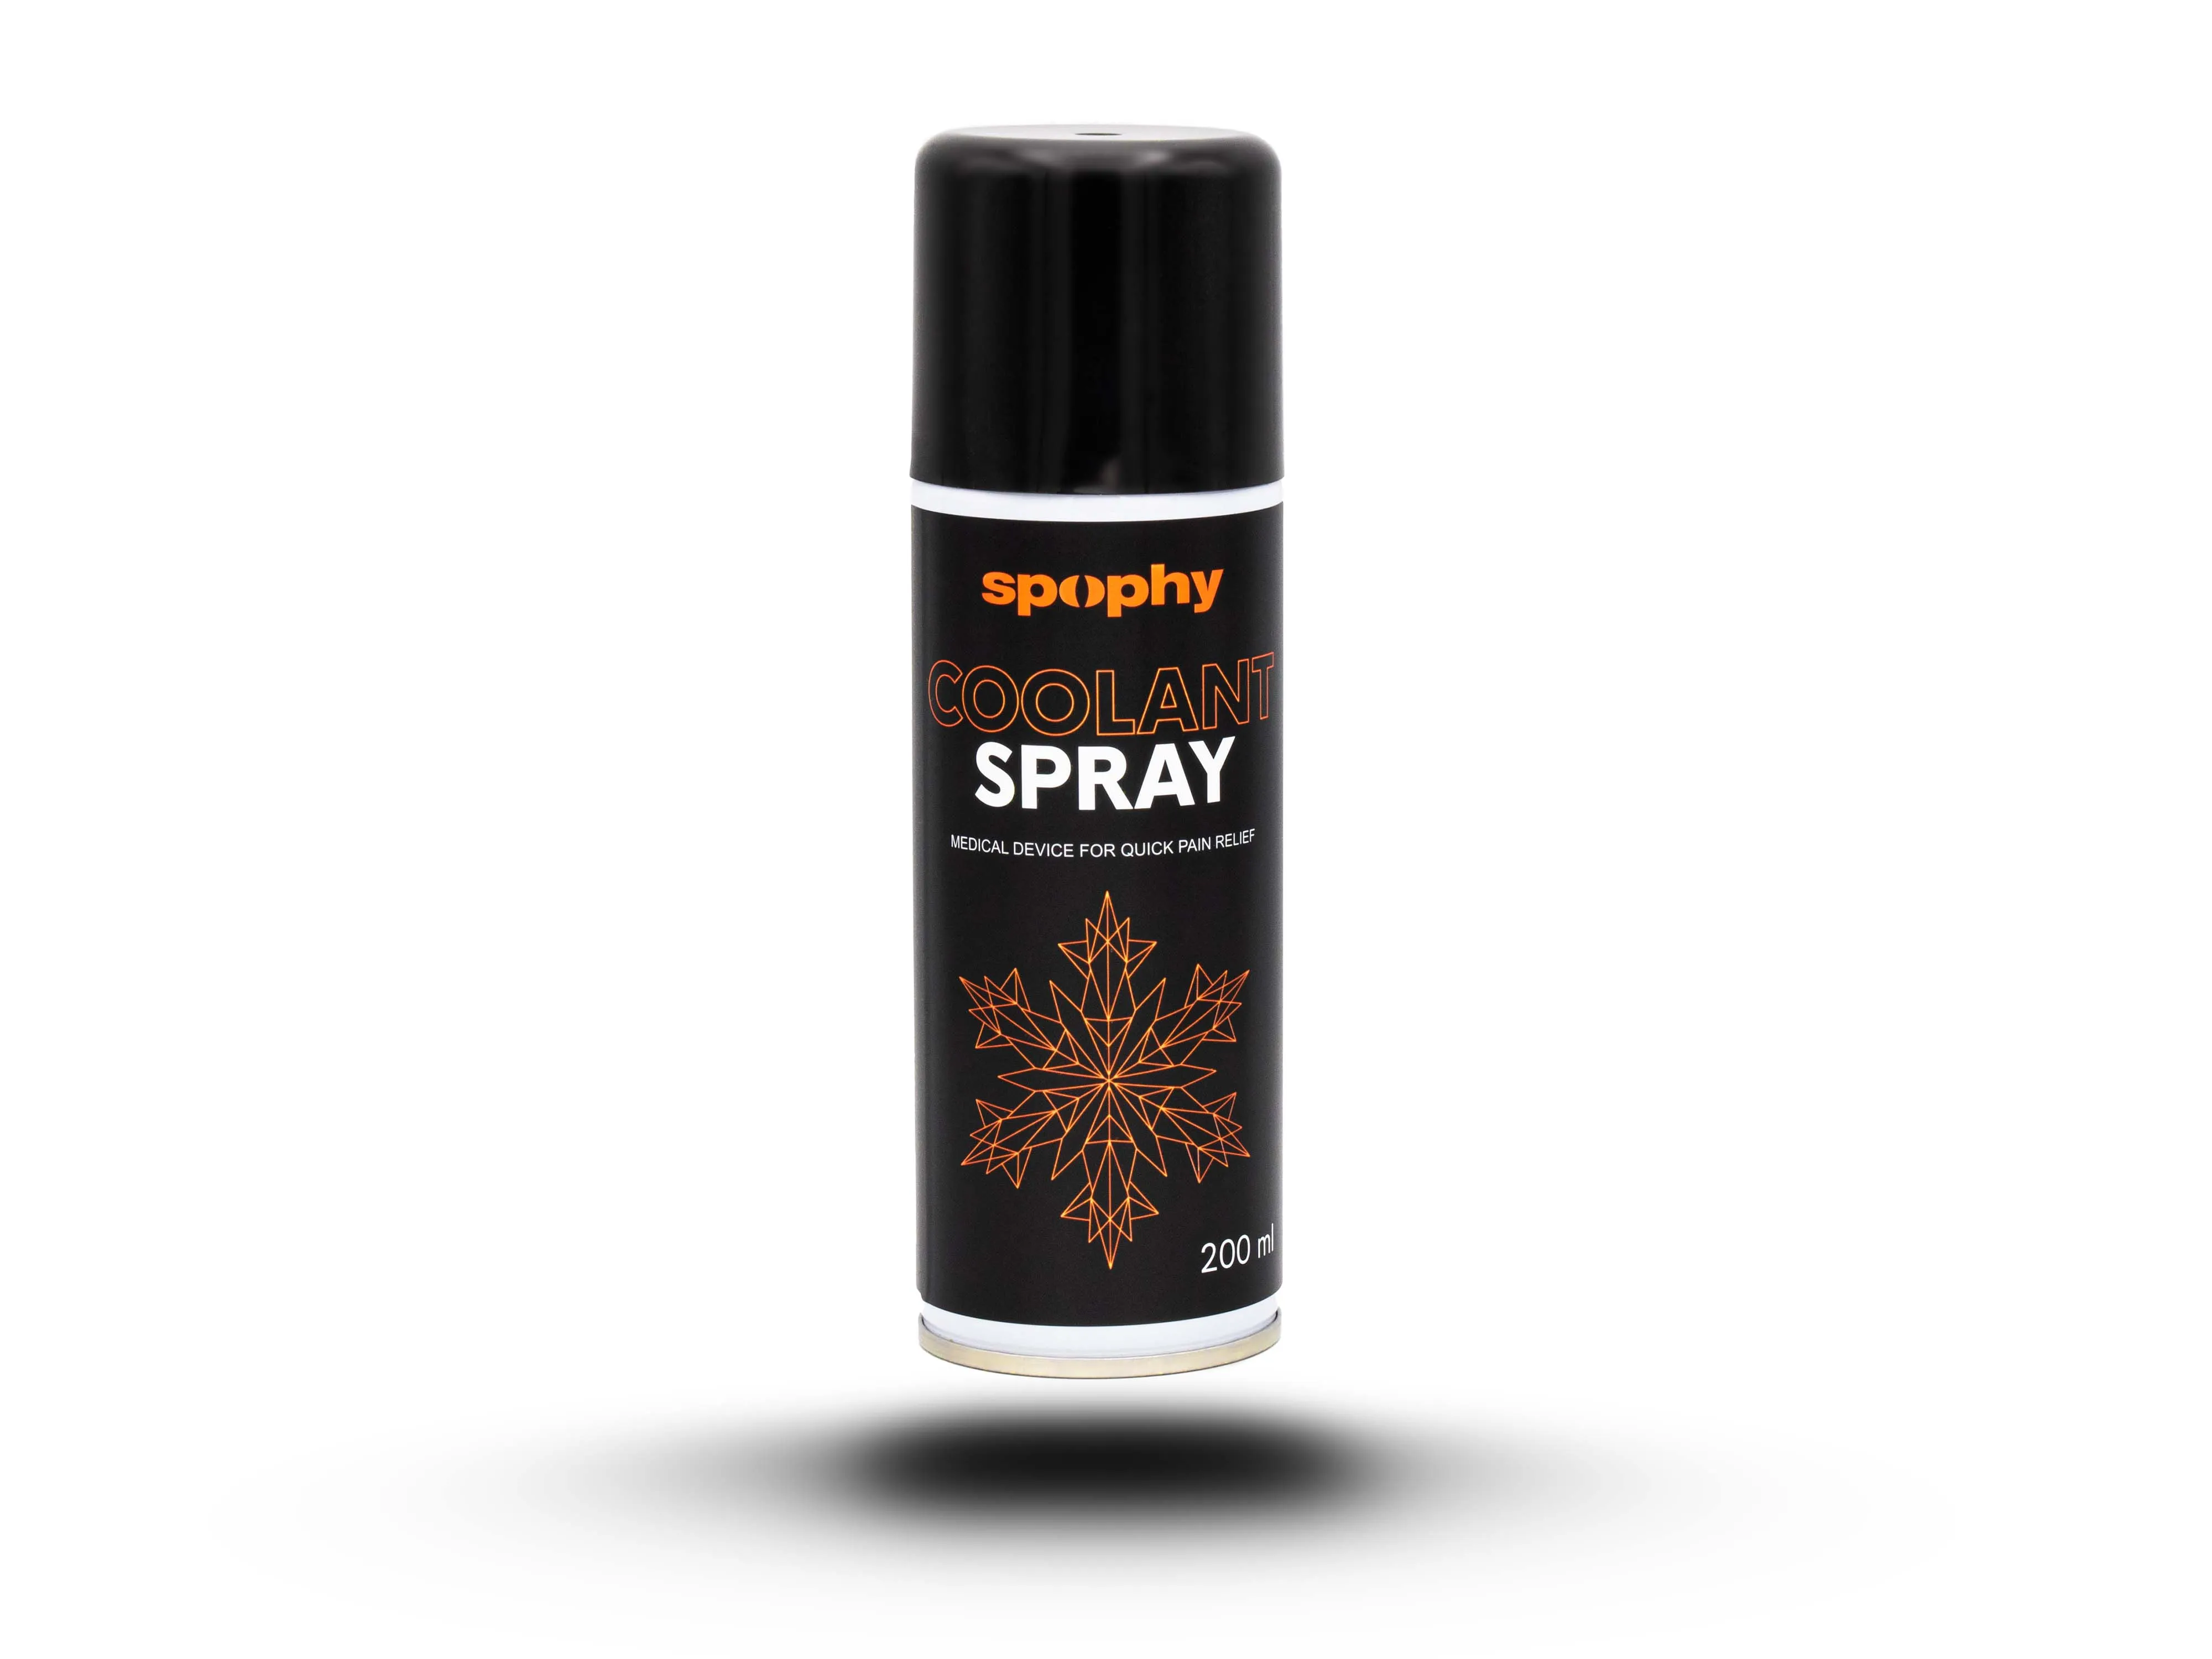 Spophy Coolant Spray, chladivý sprej, 200 ml 1×200 ml, chladivý sprej